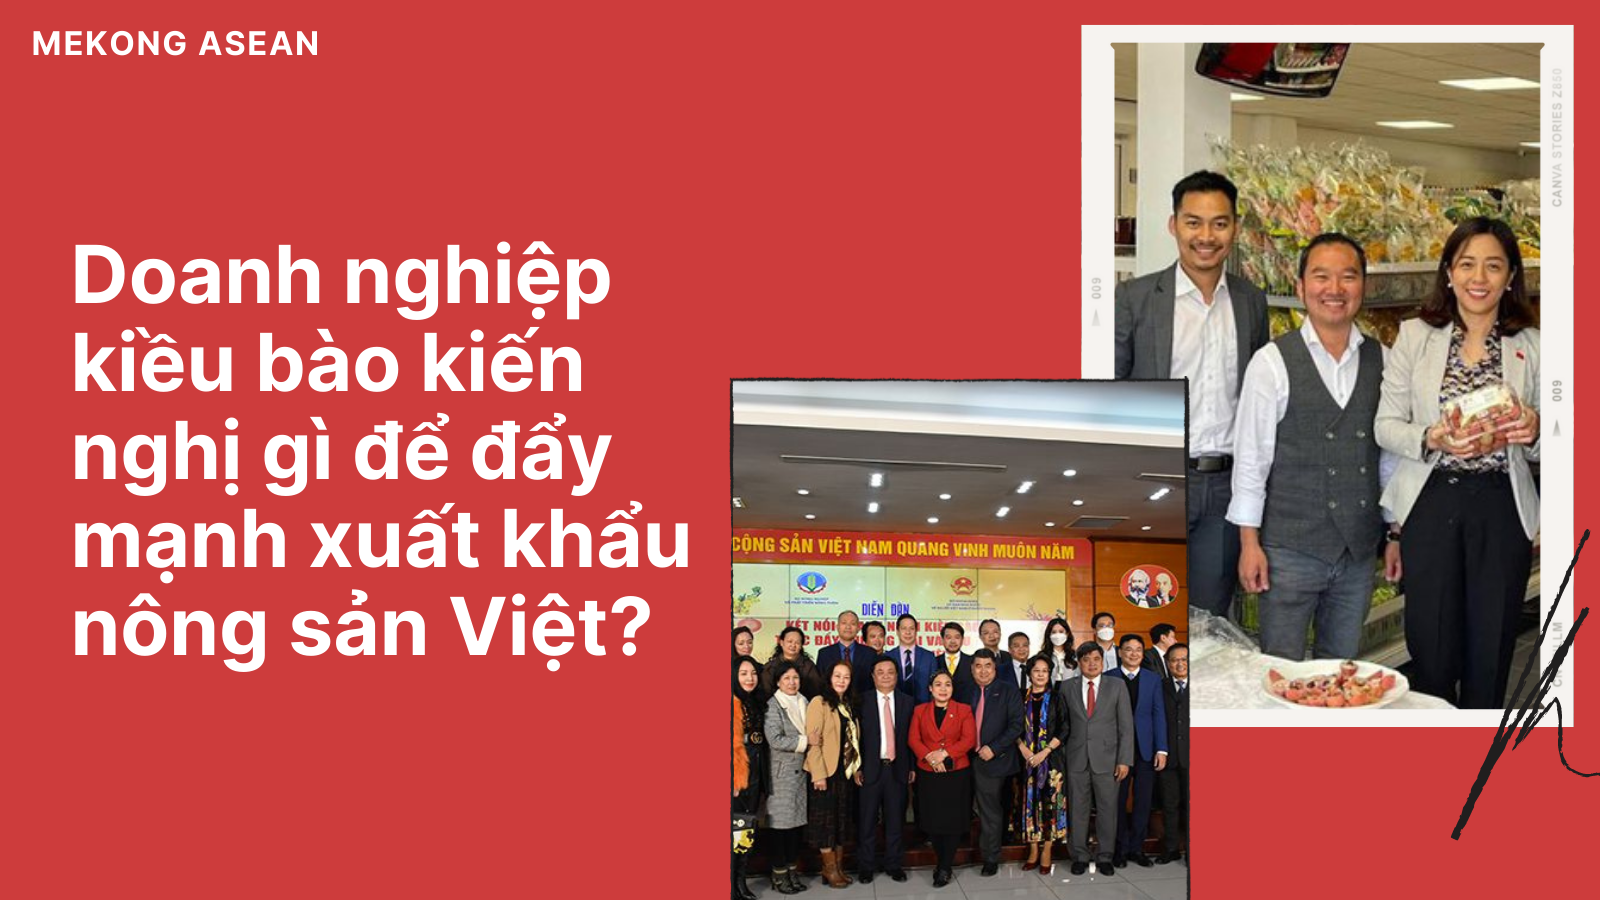 Những kiến nghị của doanh nghiệp kiều bào để nông sản Việt cất cánh